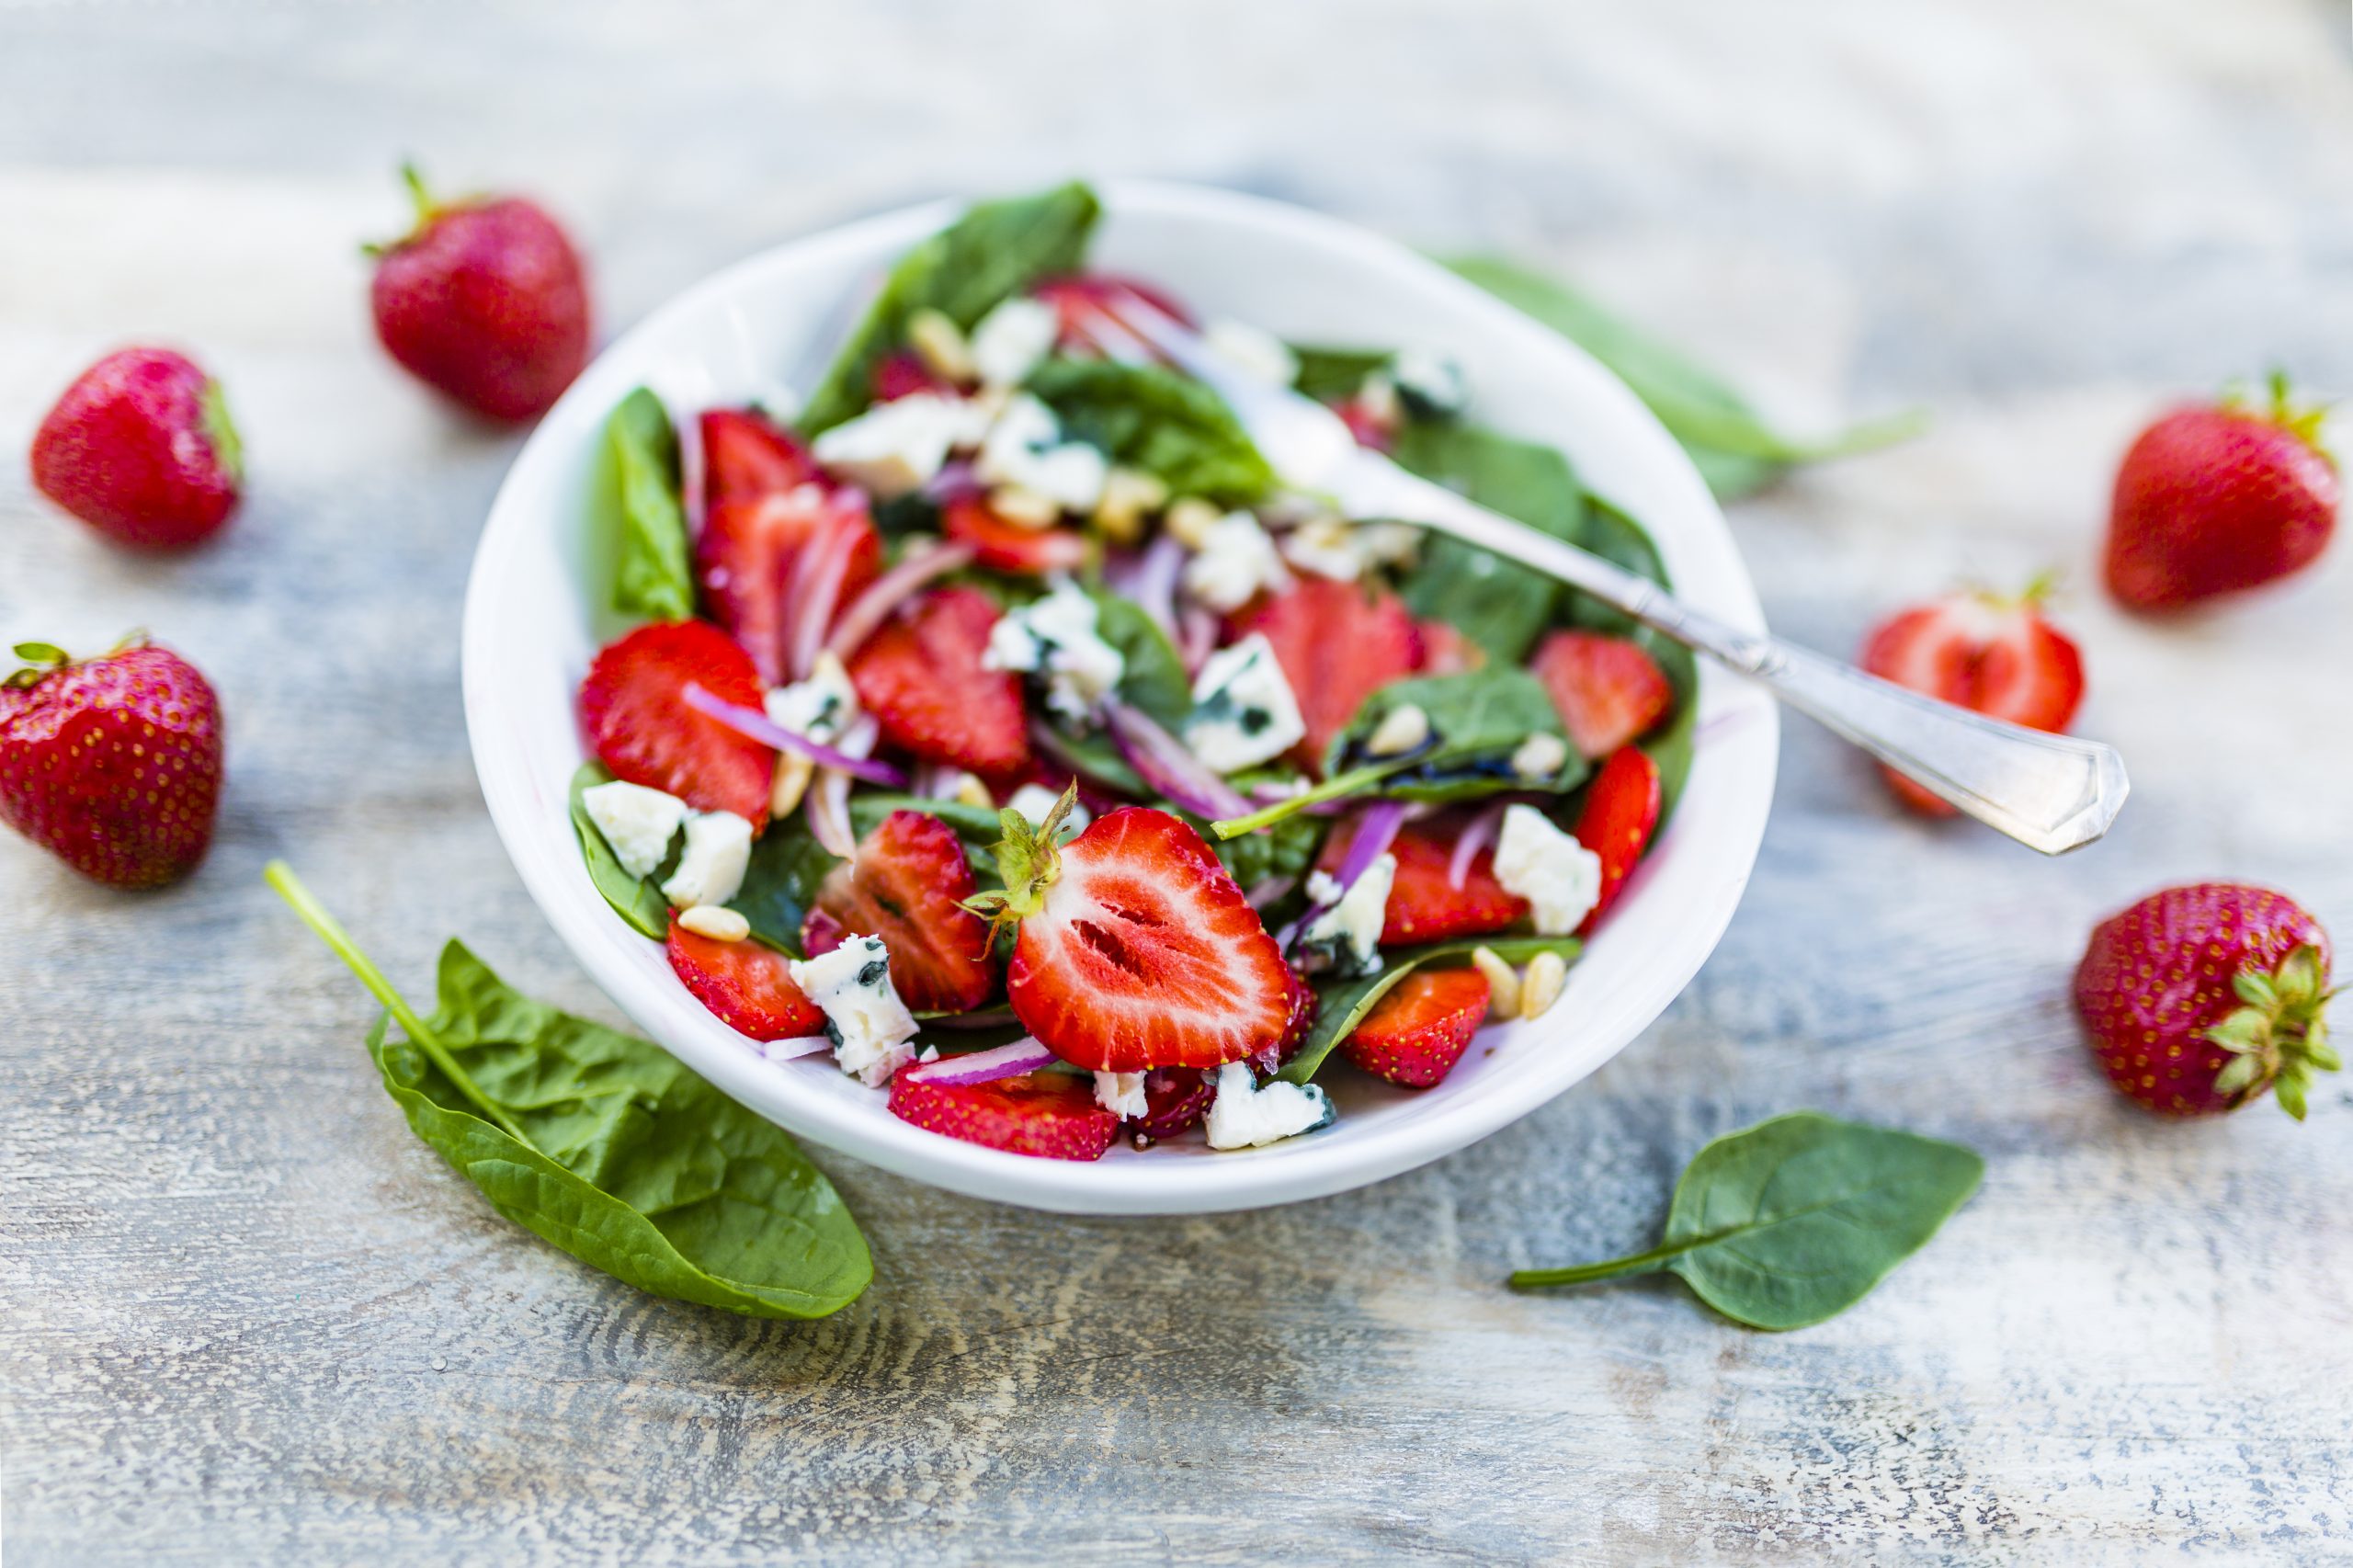 Image de couverture - Recette - Salade d'épinards et fraises